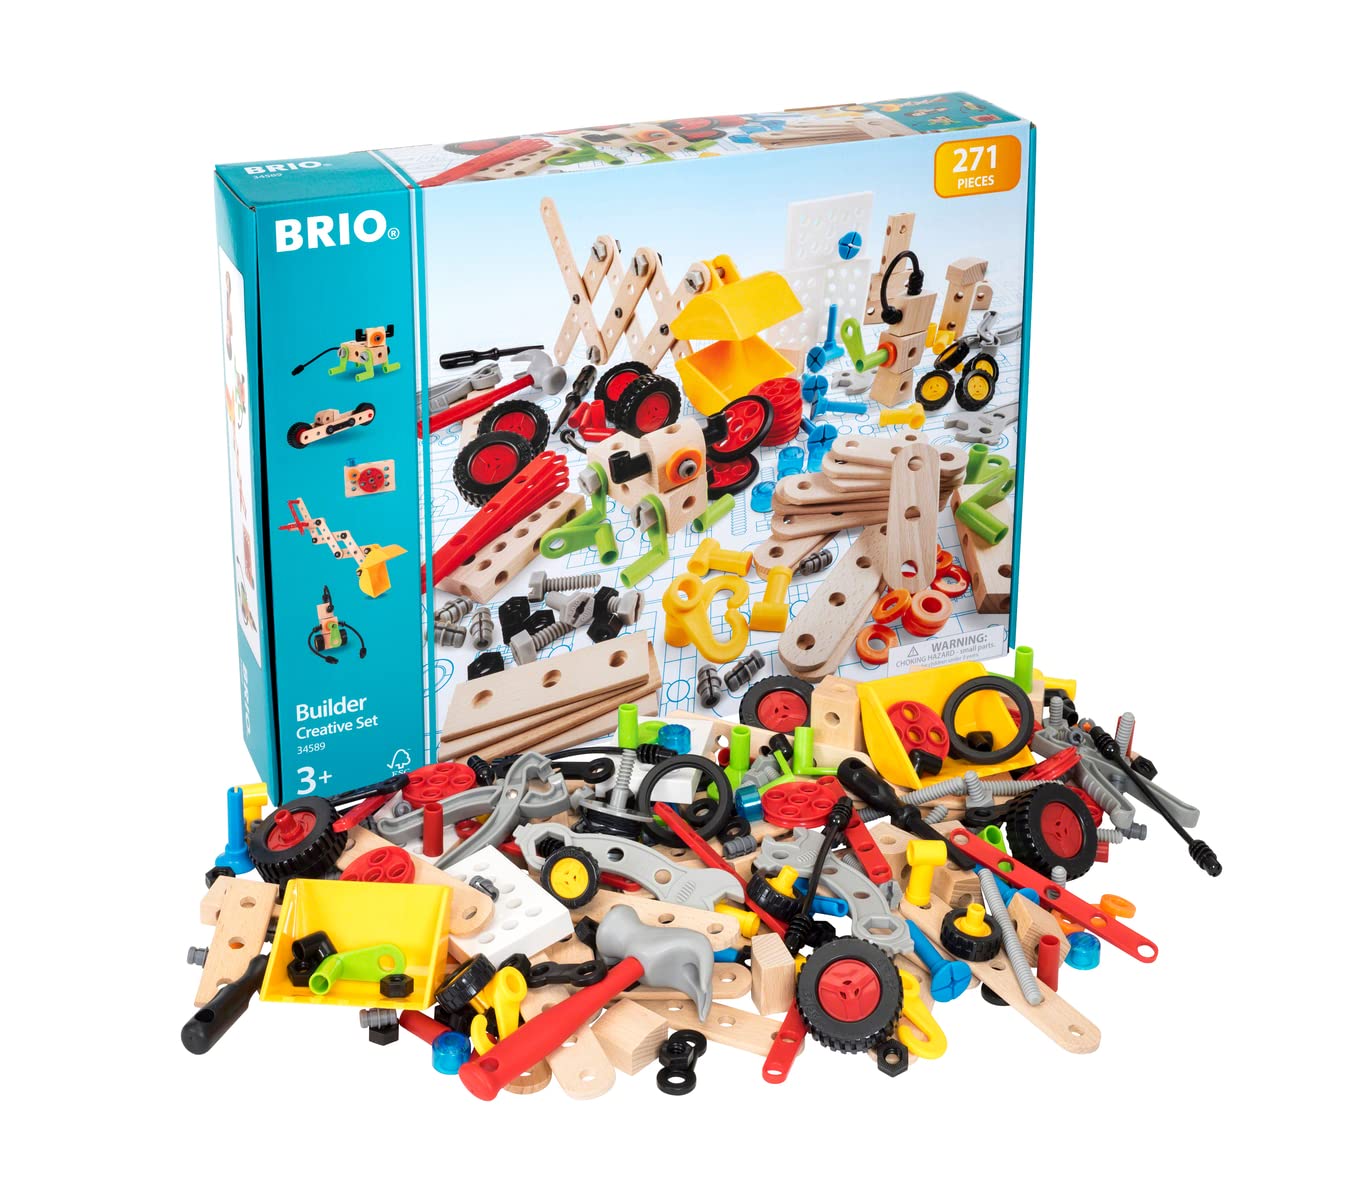 BRIO Builder 34589 Kindergartenset 270 TLG. - Konstruktionsspielzeug aus Schweden – Mega-Komplettset mit zahlreichen Bauelementen und Werkzeug für unendlichen Spielspaß - Für Kinder ab 3 Jahren